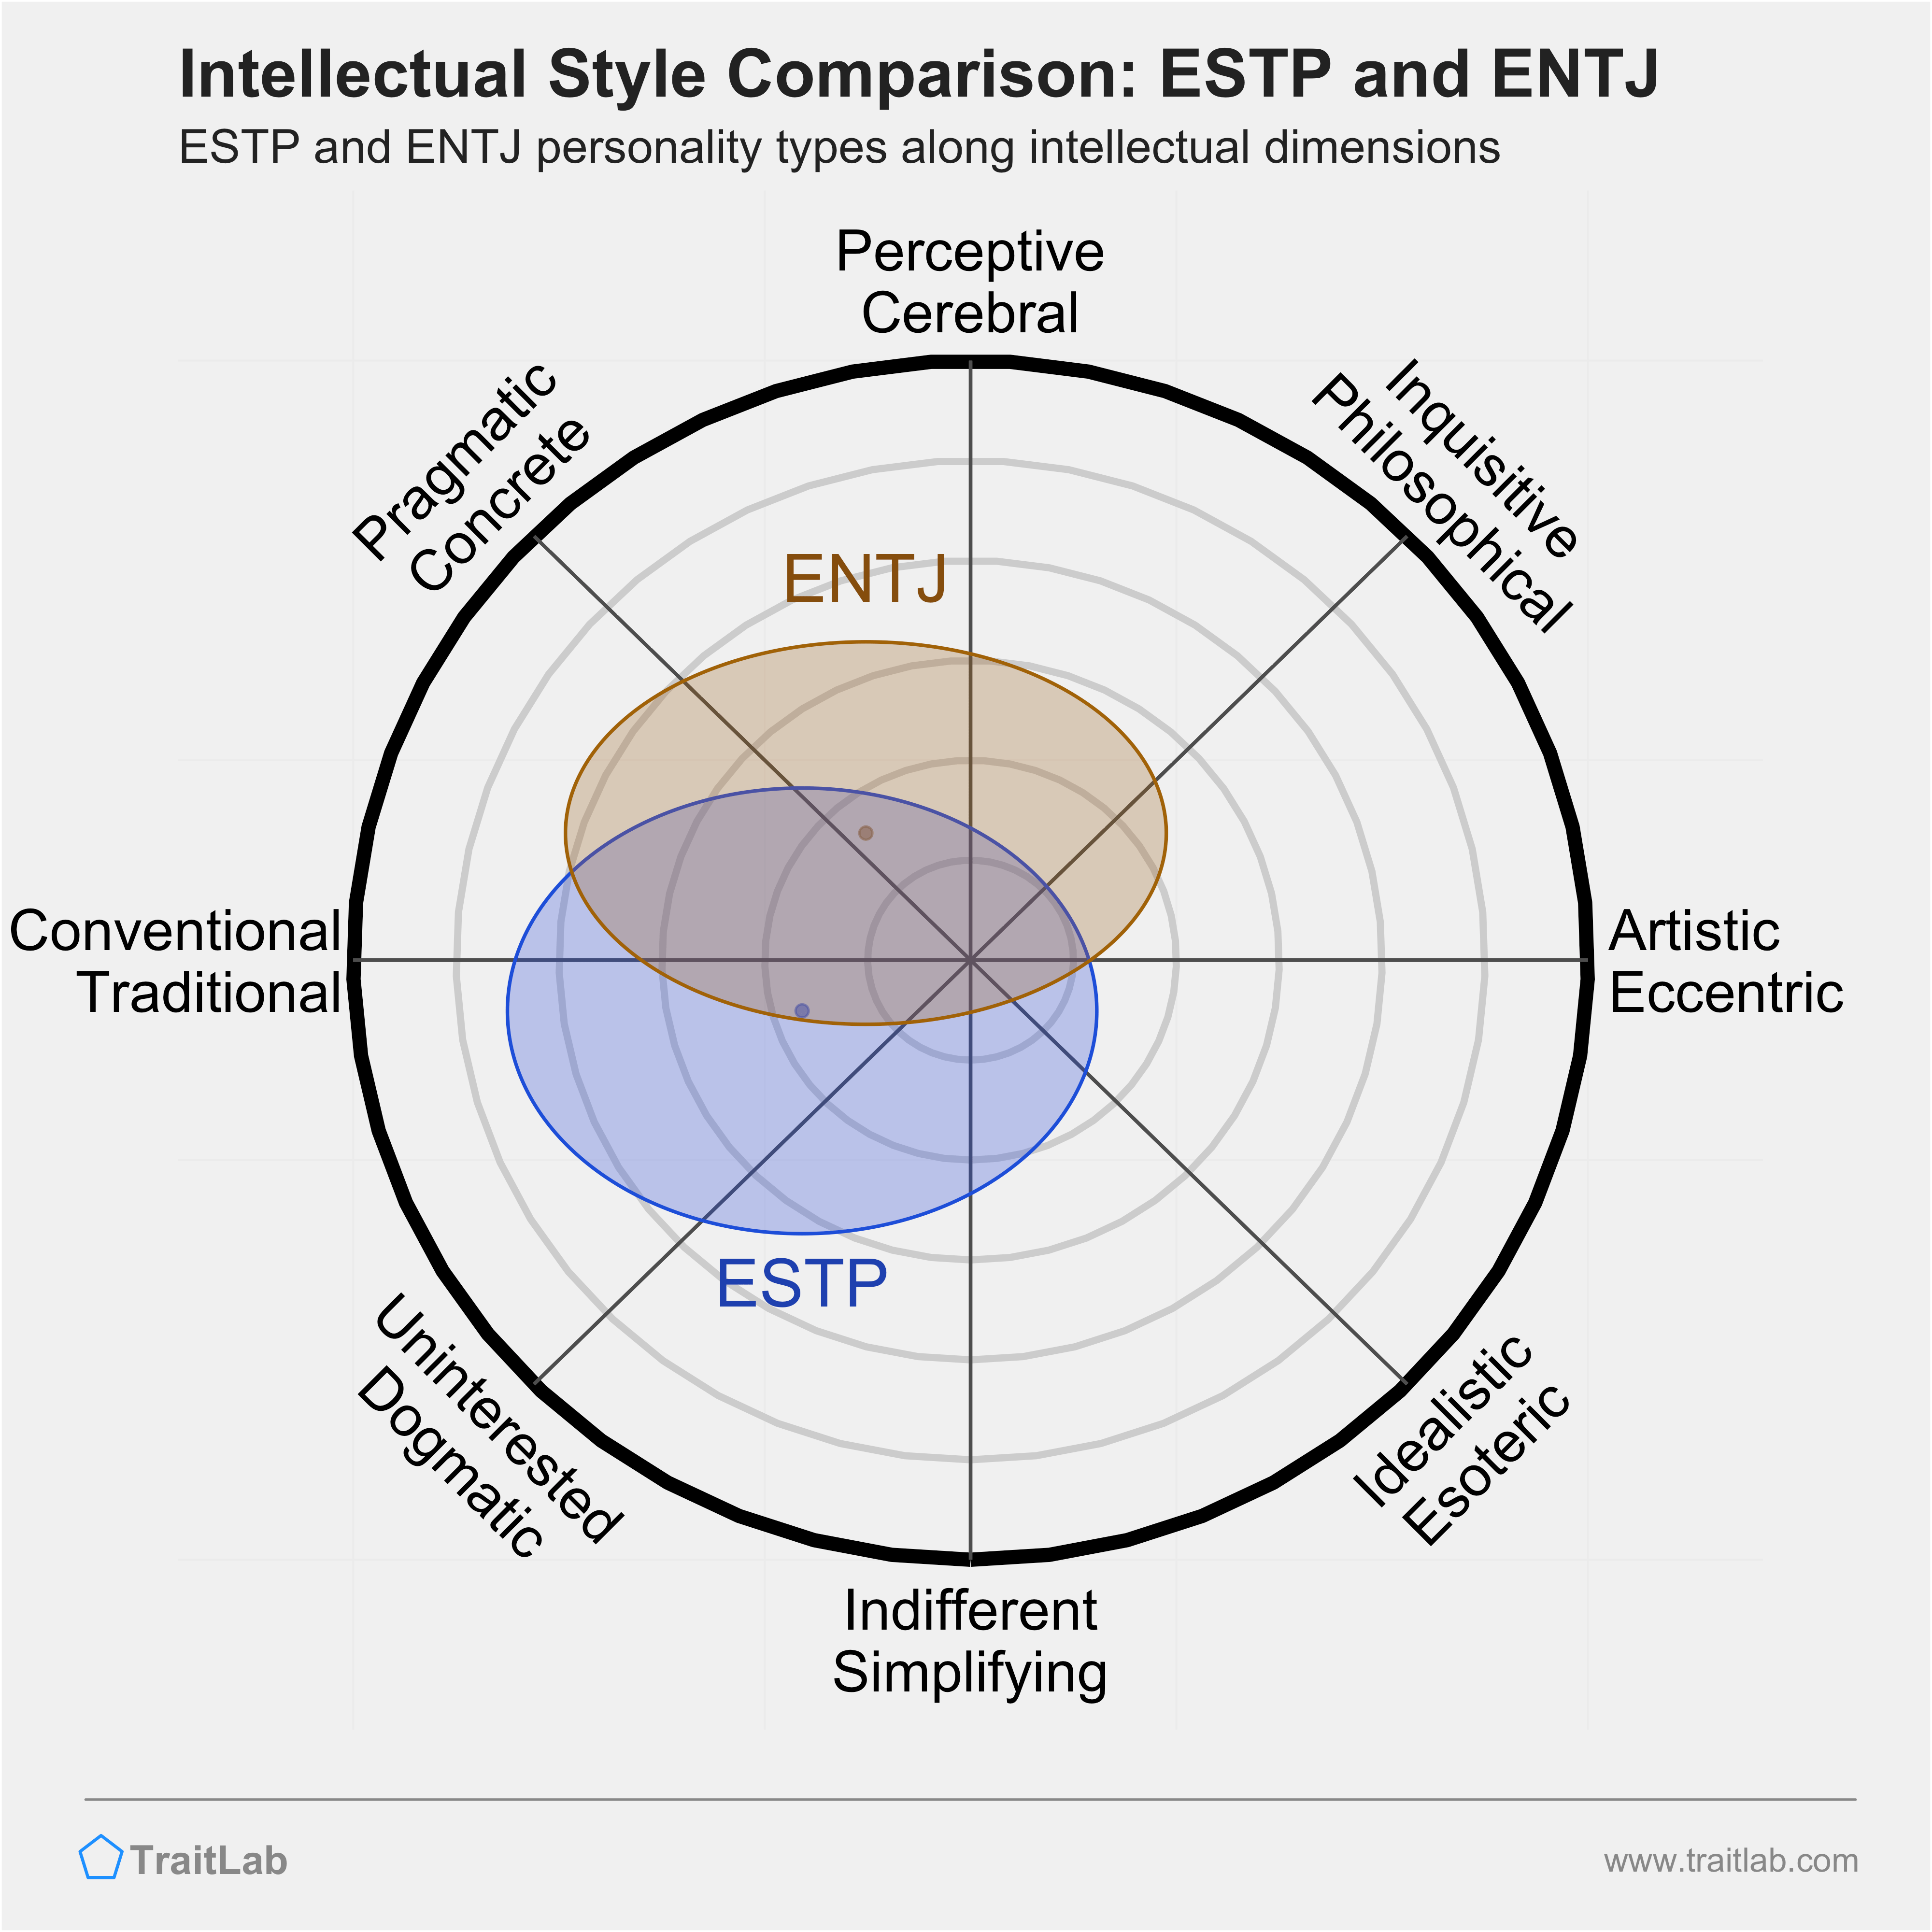 ESTP and ENTJ comparison across intellectual dimensions